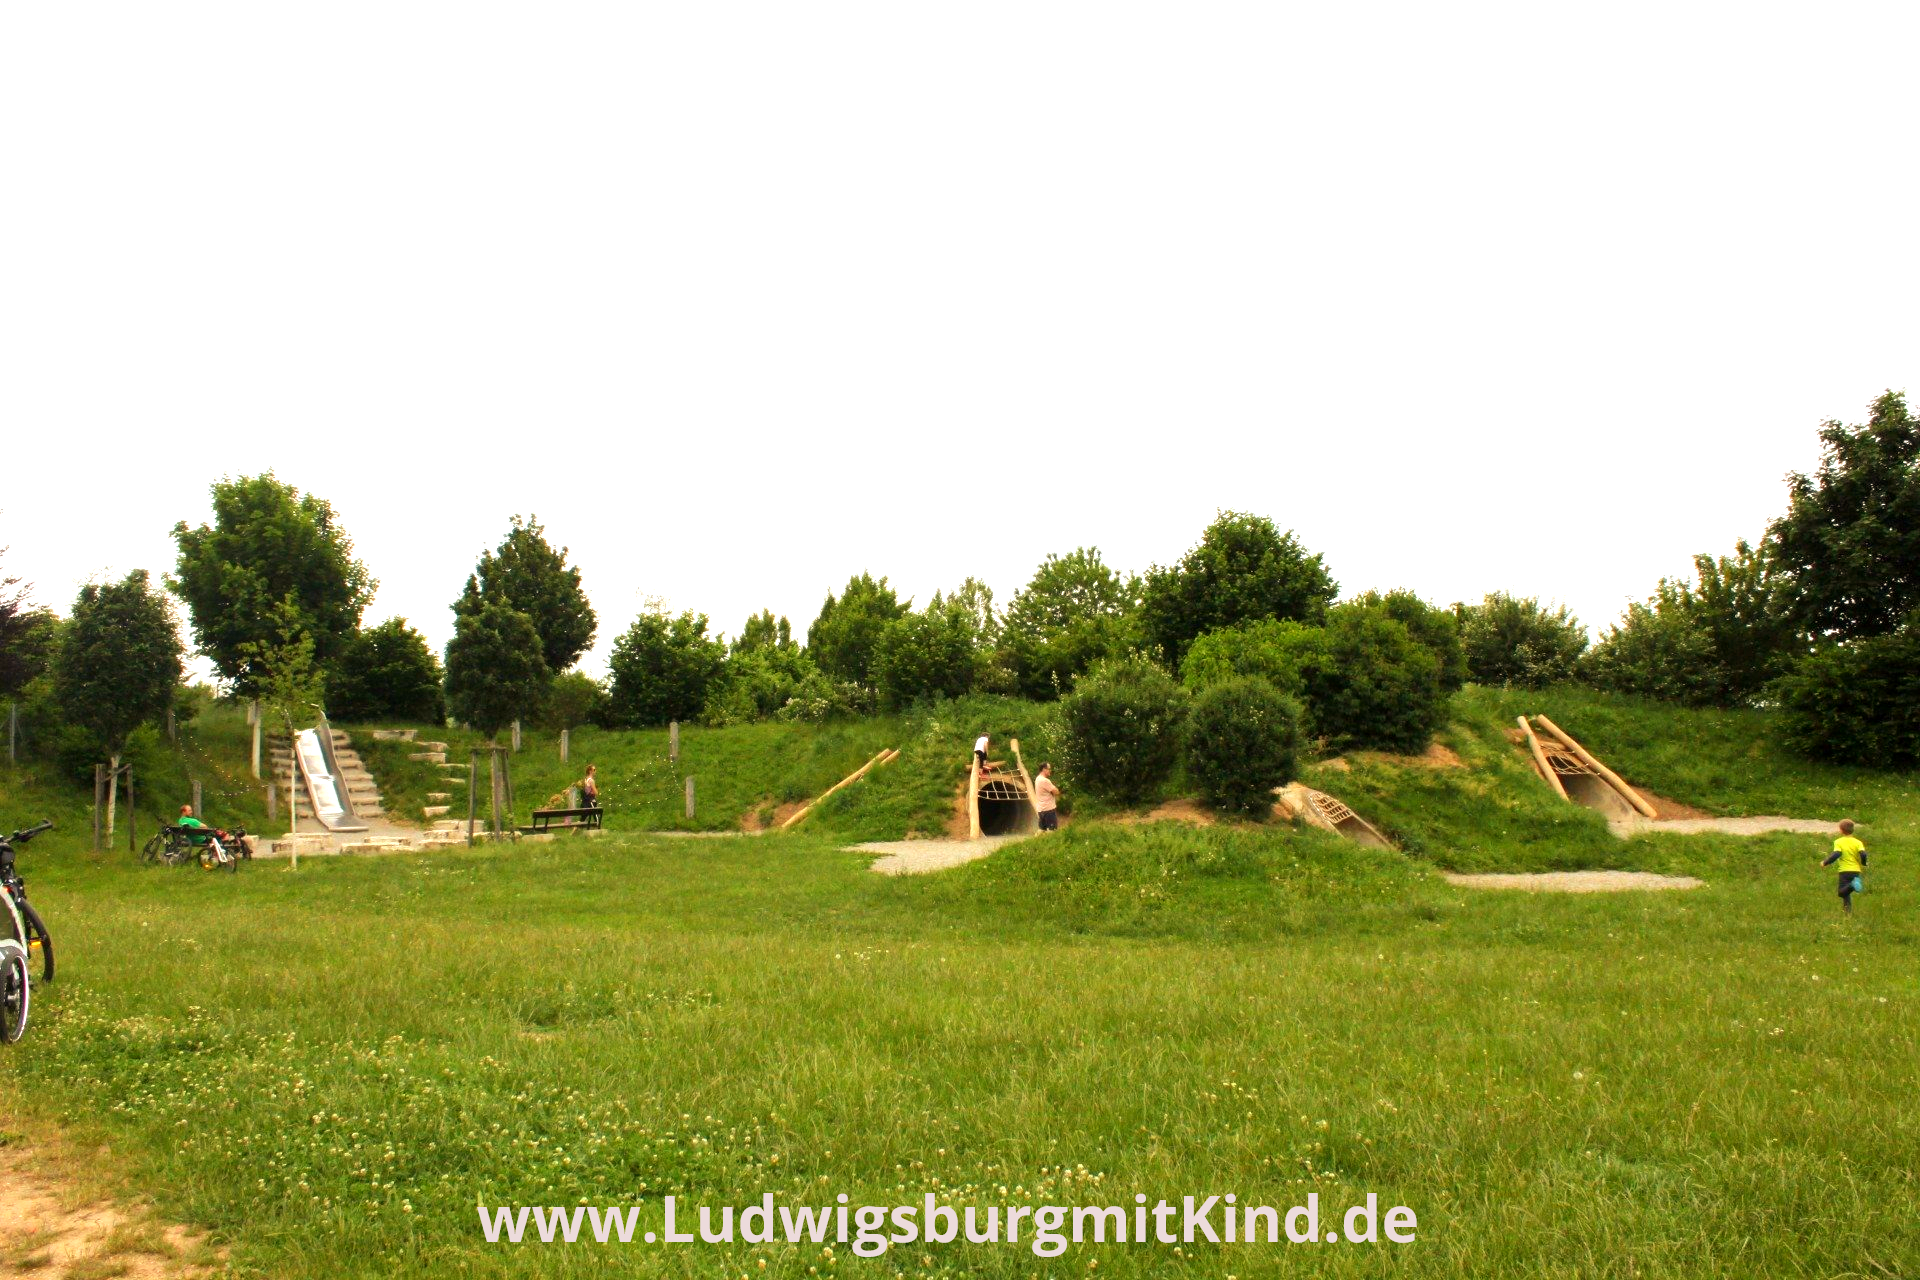 Kinder laufen auf einem Spielplatz mit vielen Tunneln in Ludwigsburg Pattonville.